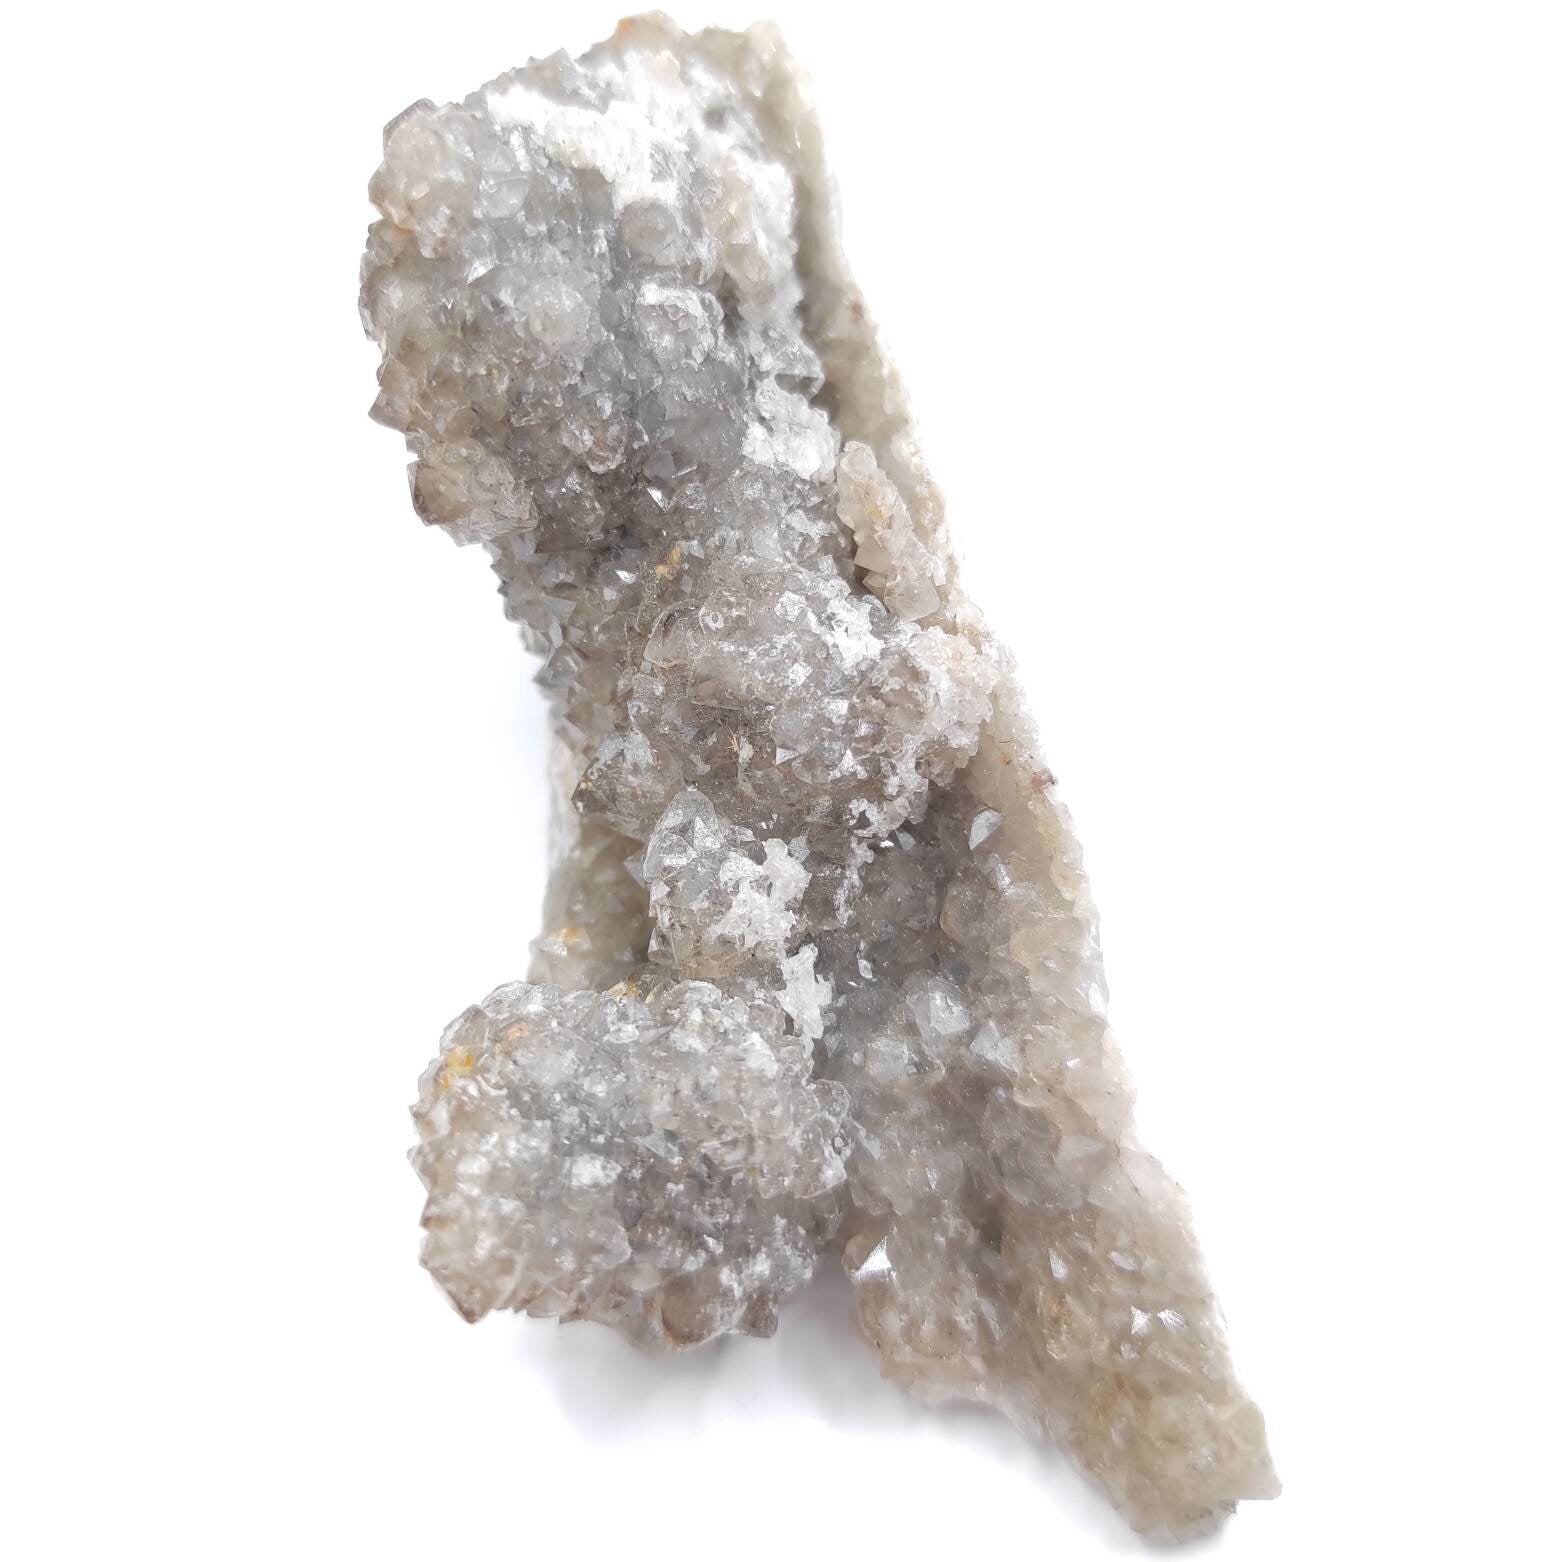 89g Thunder Bay Quartz Crystal Cluster - Quartz Mineral Specimen - Sparkling Quartz from Canada - Natural Rough Canadian Minerals